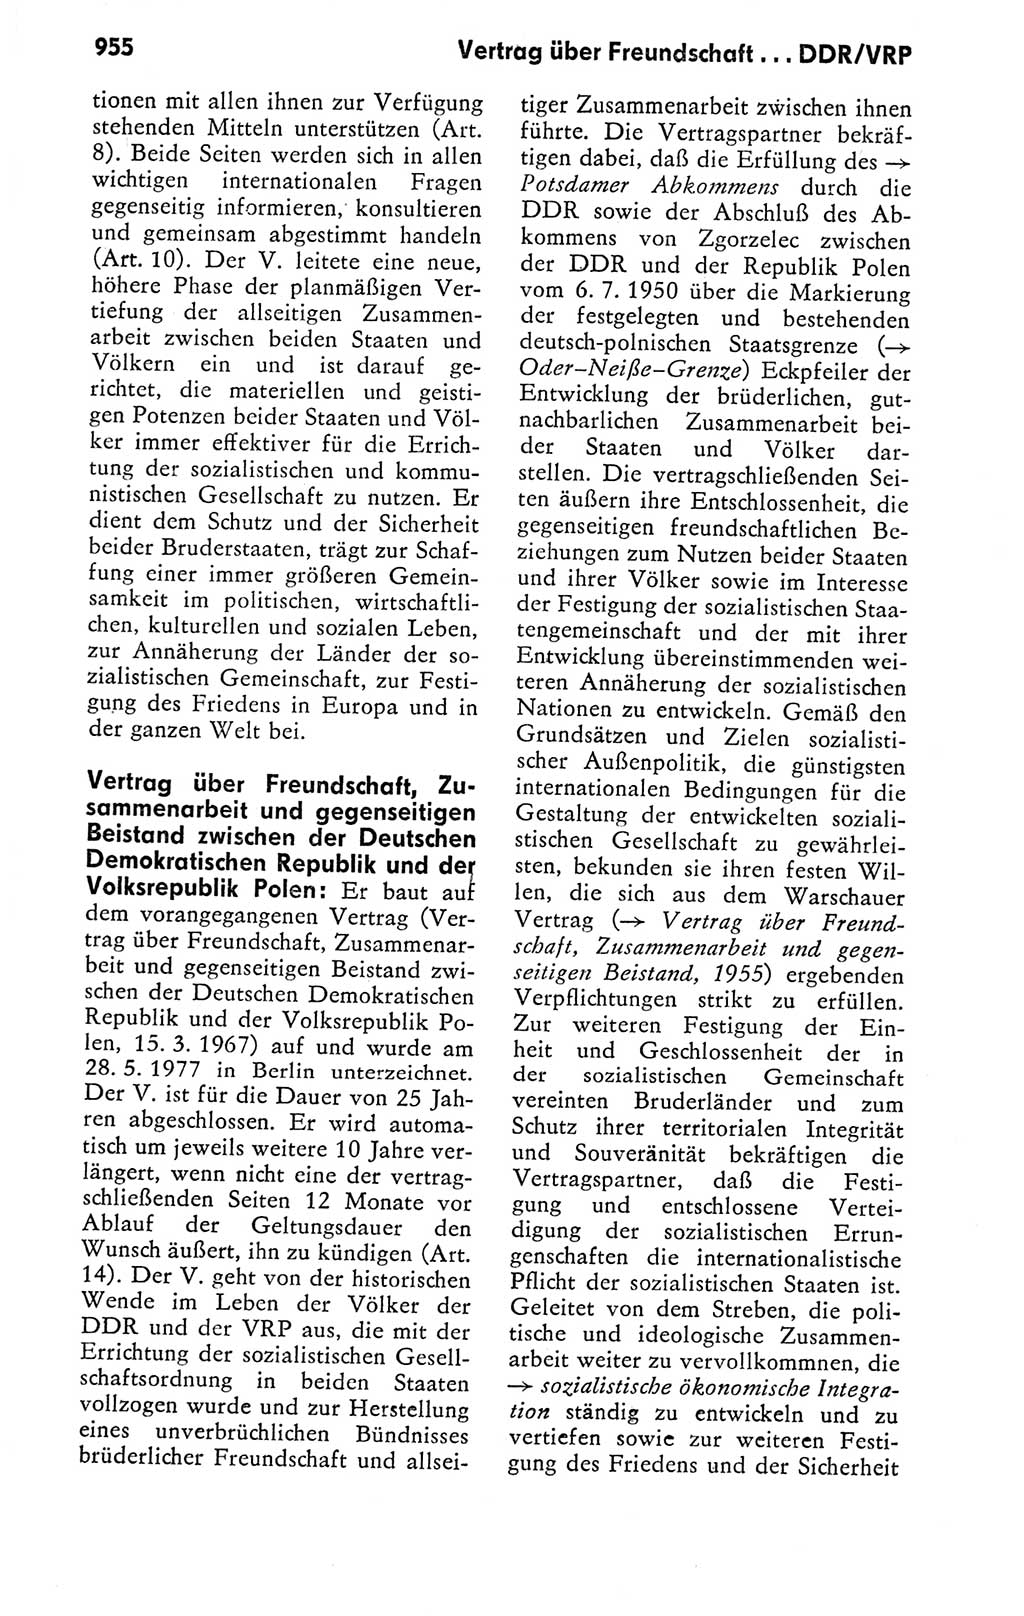 Kleines politisches Wörterbuch [Deutsche Demokratische Republik (DDR)] 1978, Seite 955 (Kl. pol. Wb. DDR 1978, S. 955)